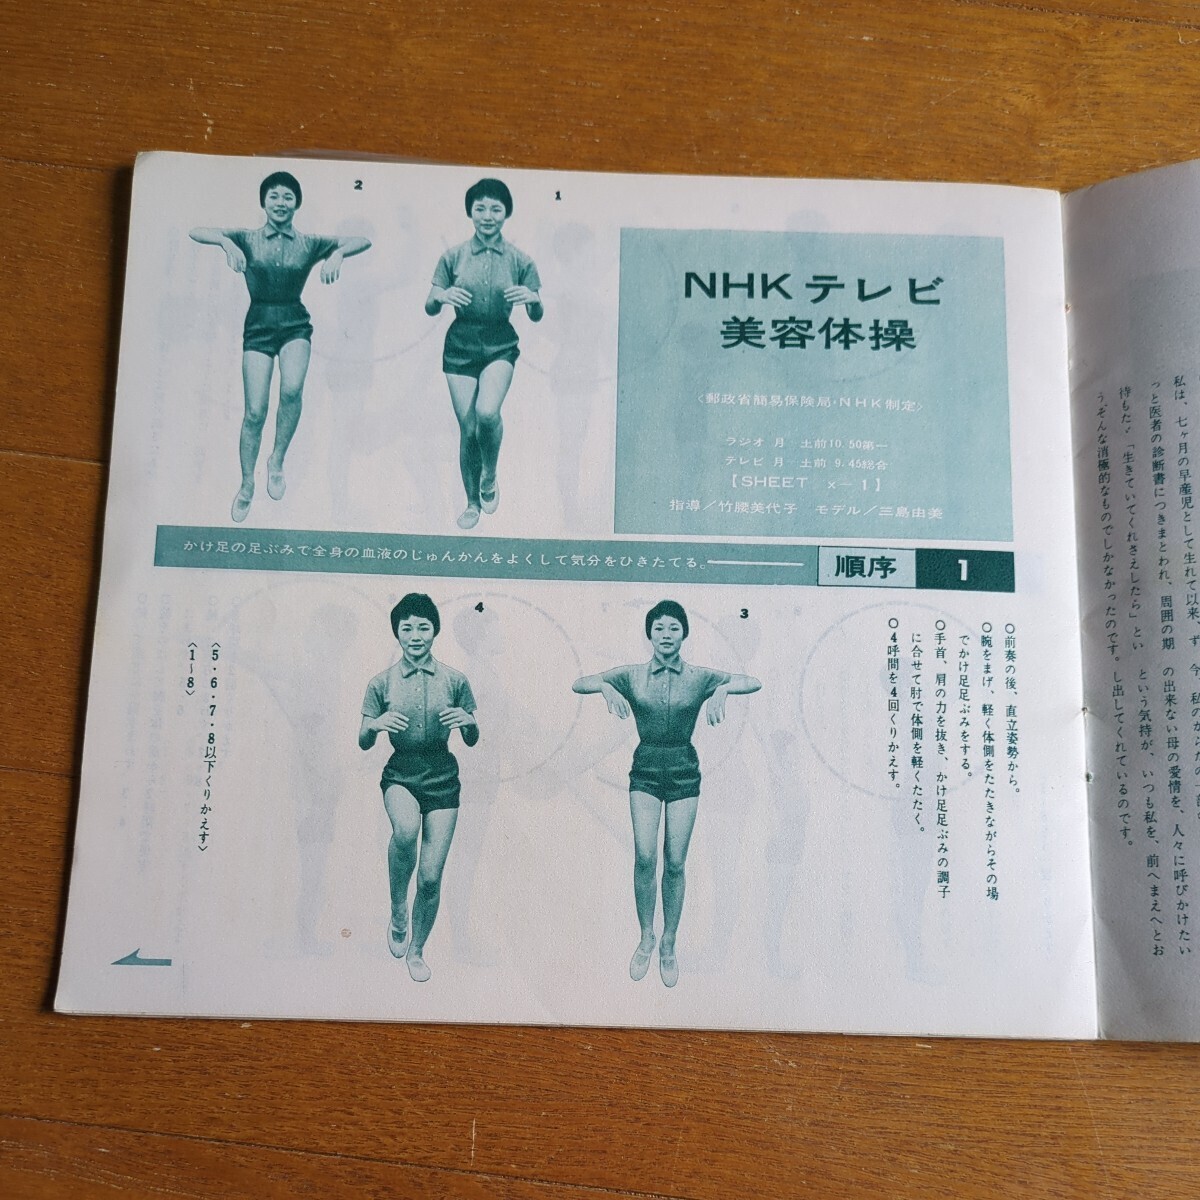 ソノシート 美しい美容体操 4枚組 NHKテレビ美容体操等 竹腰美代子_画像4